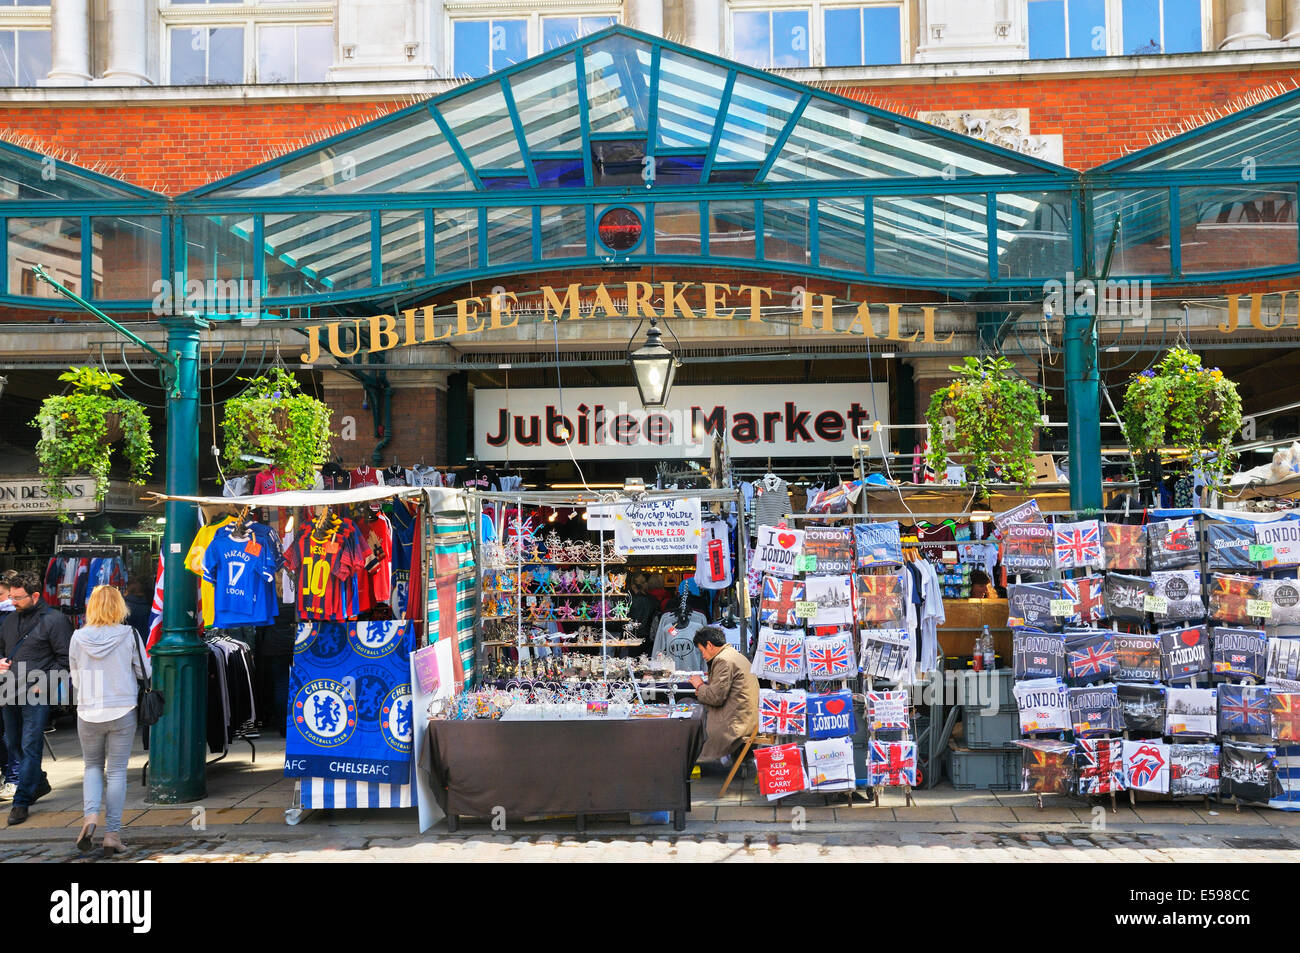 Le marché du jubilé Hall, Covent Garden, London, England, UK Banque D'Images